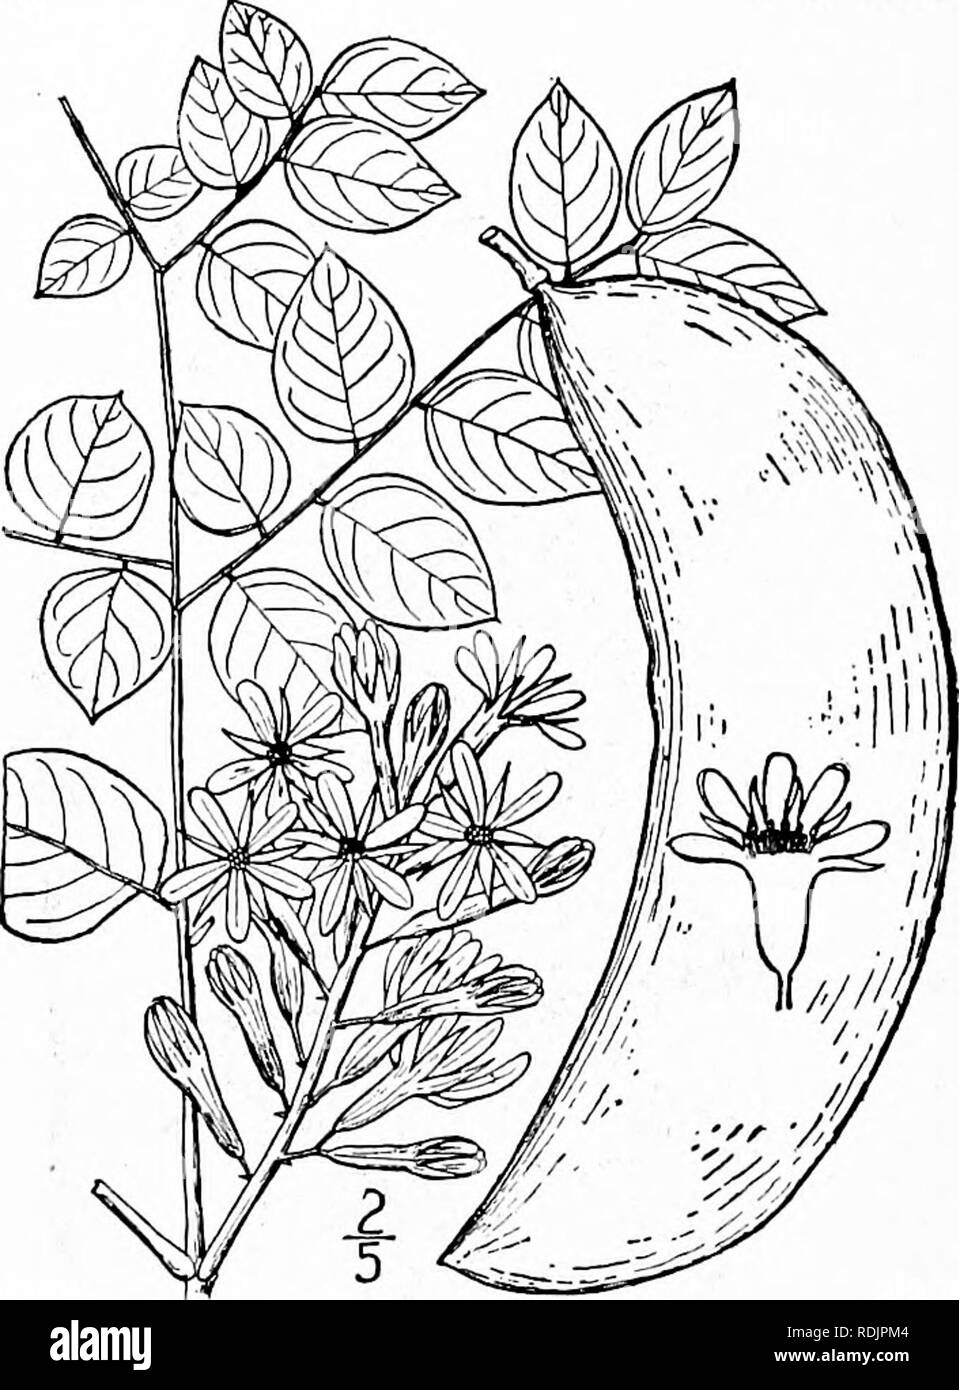 . Eine Illustrierte Flora von der nördlichen USA, Kanada und die britischen Besitzungen, von Neufundland zu den Parallelen der südlichen Grenze von Virginia, und vom Atlantik westwärts zu den 102 d Meridian. Botanik; Botanik. 340 CAESALPINIACEAE. Vol. II. I. Gymnocladus dioica (L.) Koch. Ken-tucky Kaffee-tree. Abb. 2447. Guilandina dioica L. Sp. PI. 381, 1753. Gymnocladus canadensis Lam. Encycl. i: 733. 1783. Gymnocladus dioicus Koch, Dendrol. i: 5. 1869. Einen großen Wald Baum, mit groben Rinde, maxi-mum Höhe ca. 100°, und Stammdurchmesser von 3°. Blätter groß, bipinnate, blattstiel Stockfoto